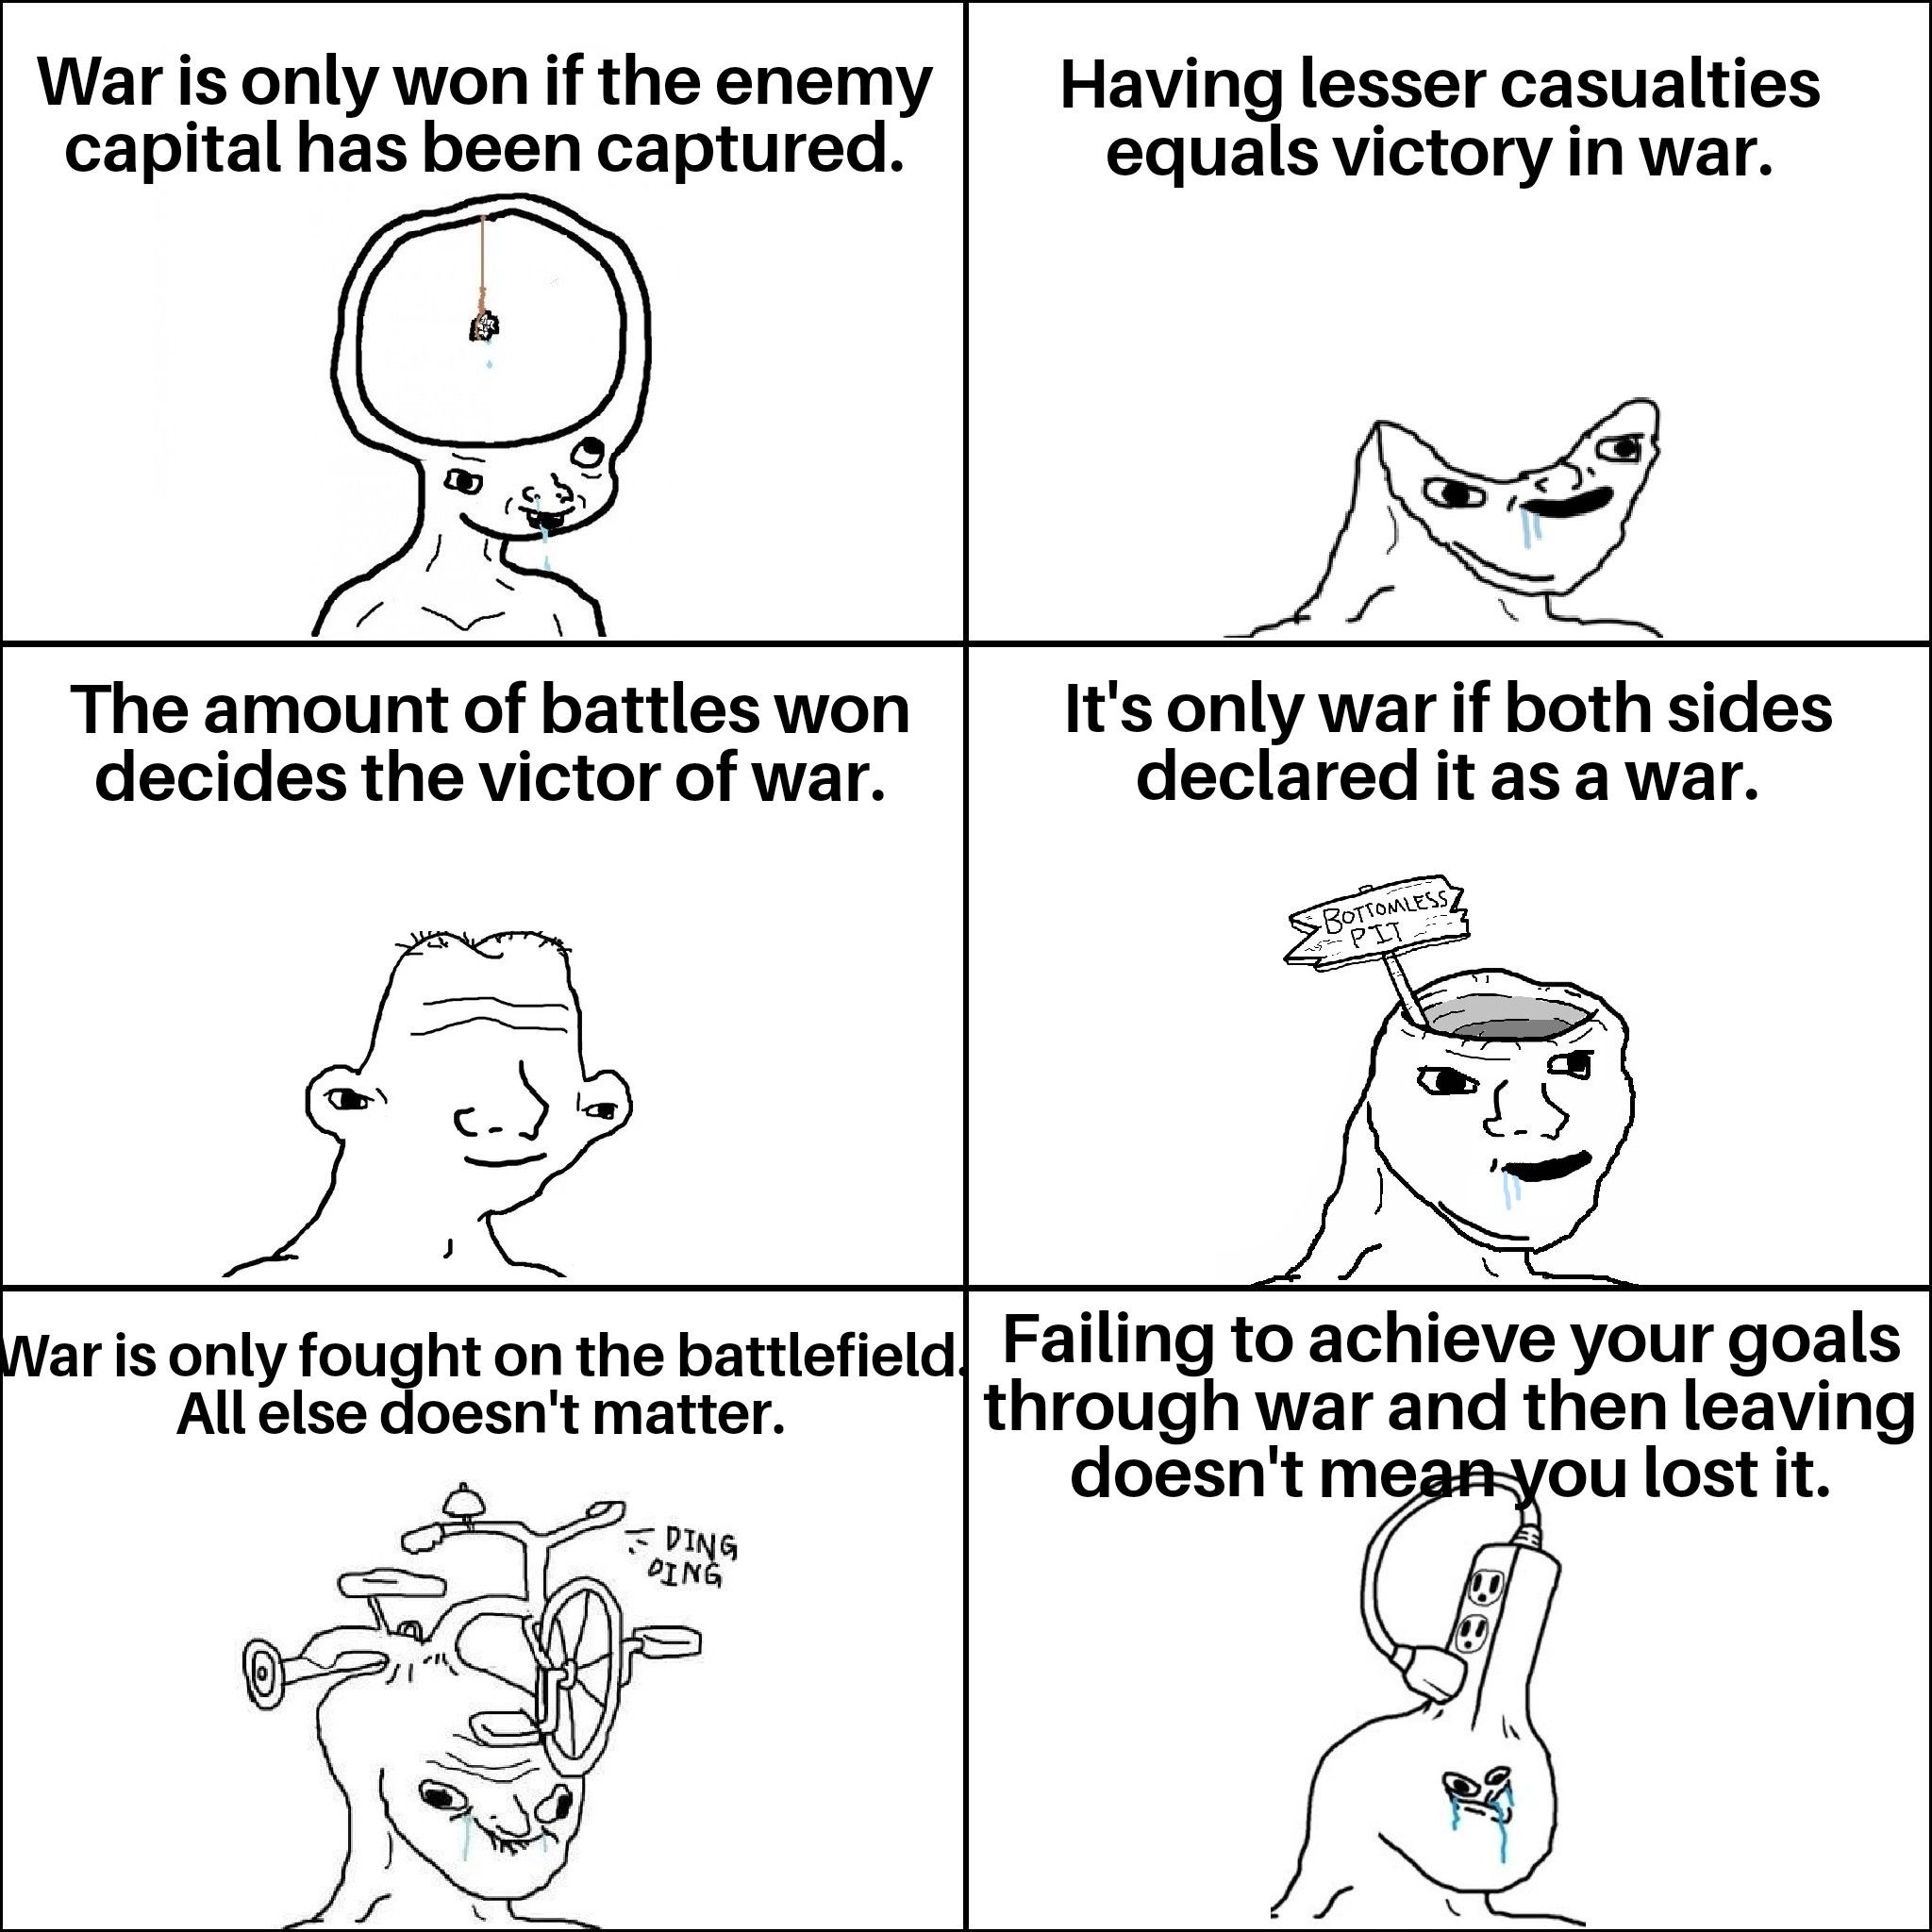 Experts of War